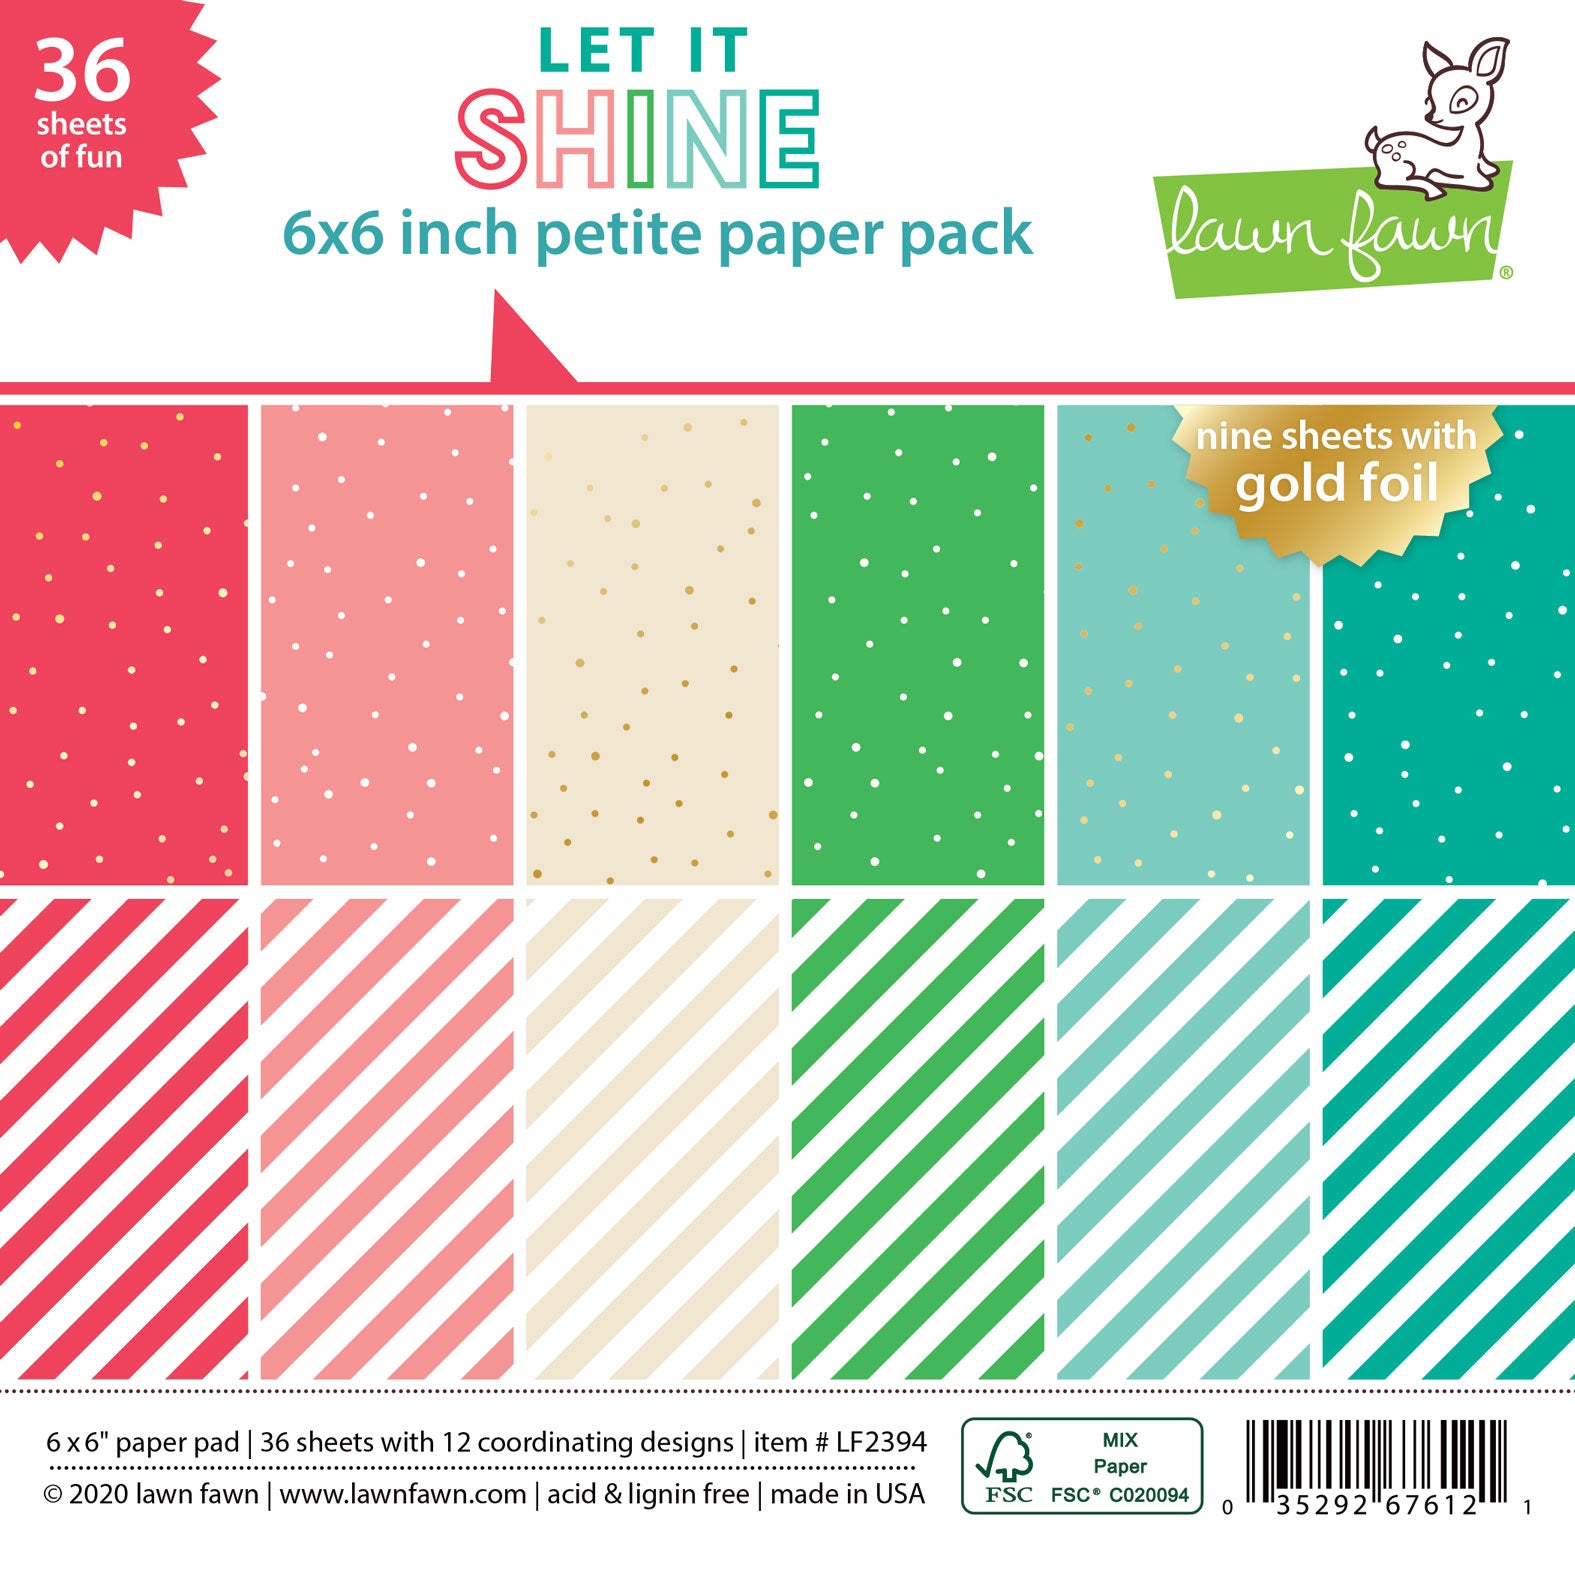 Let it Shine - Petite Paper Pack